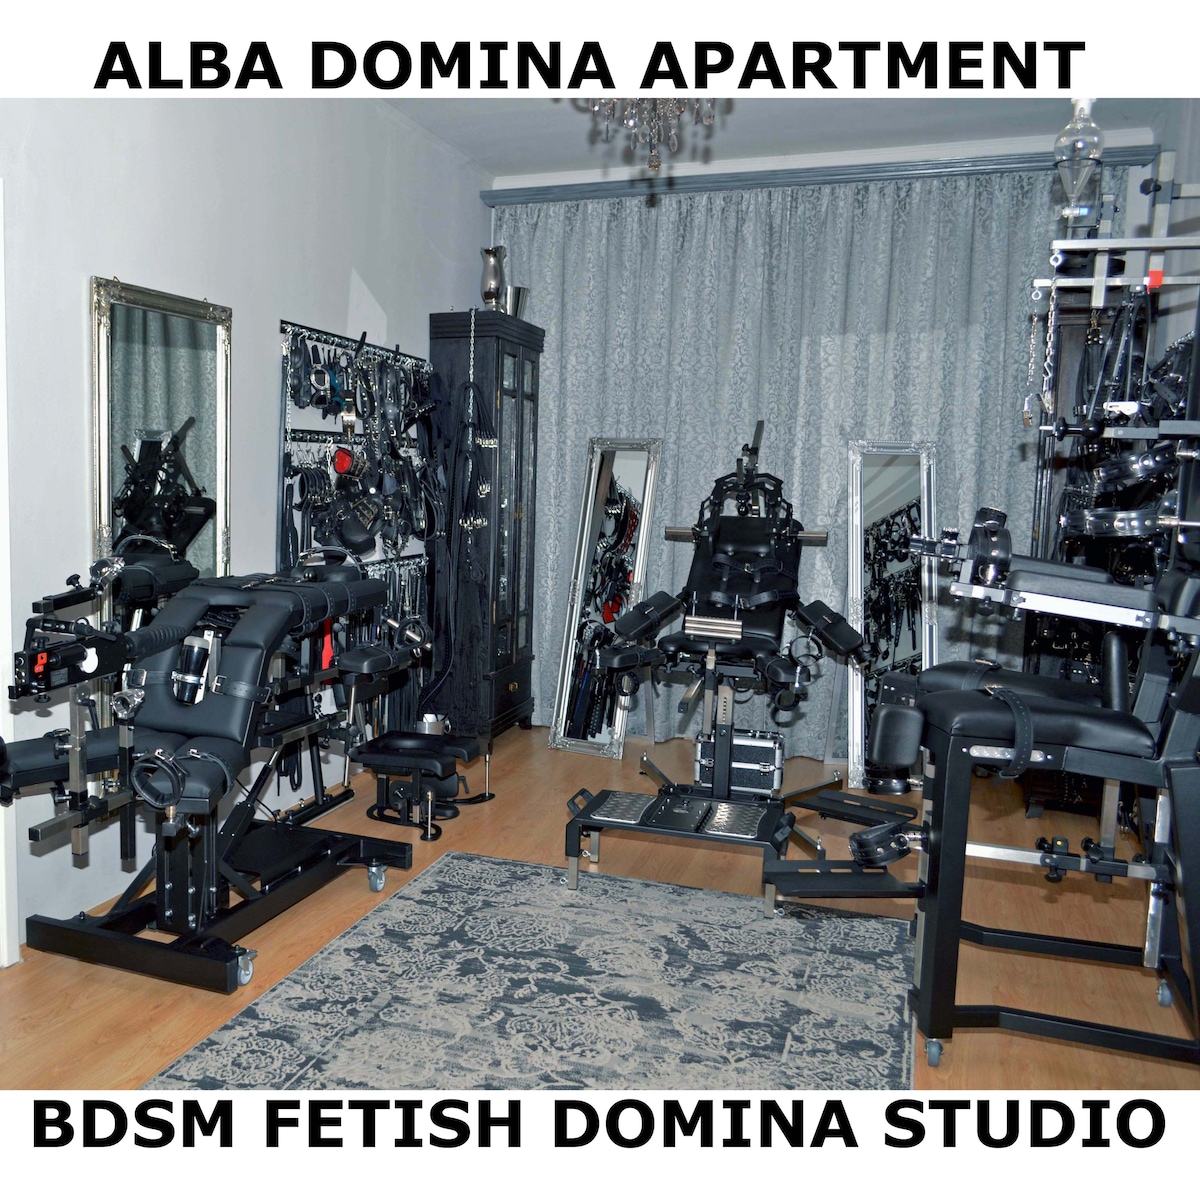 Alba Domina Apartment - BDSM Studio